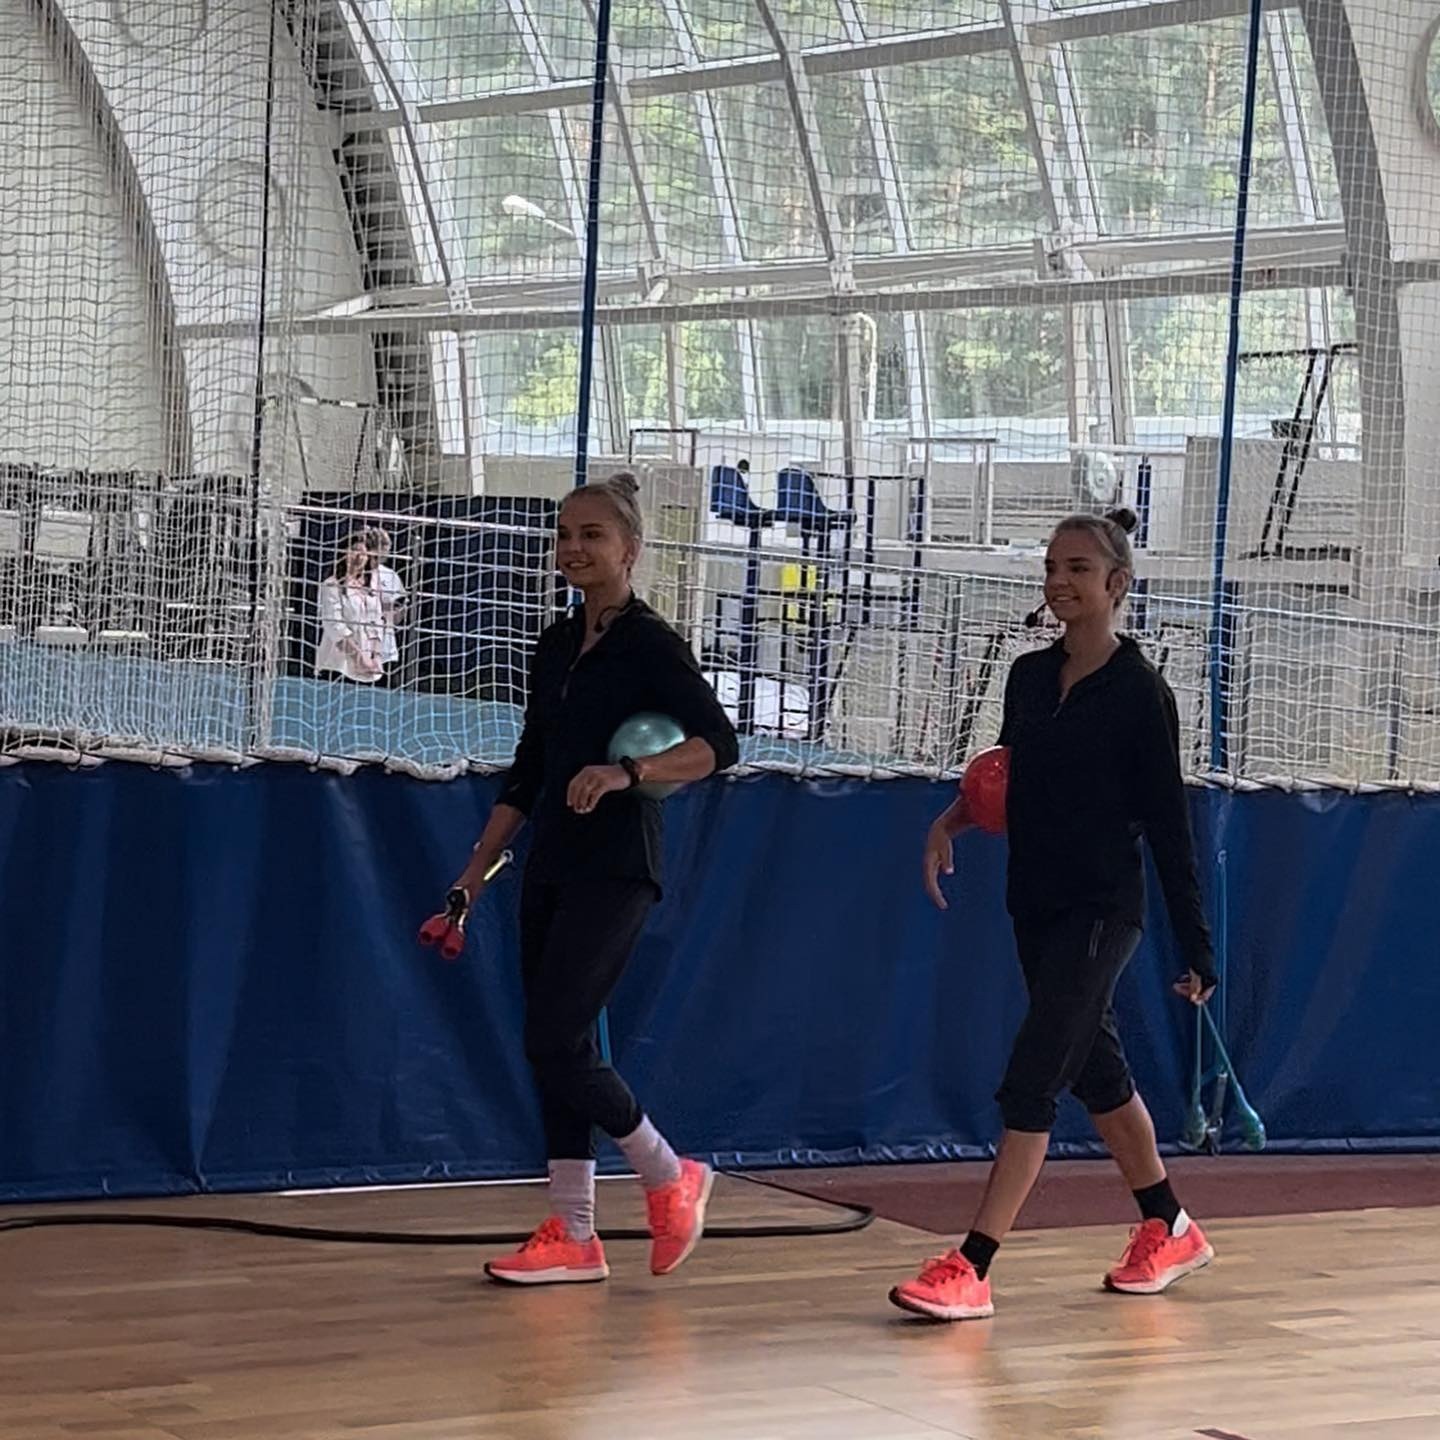 Нижегородские гимнастки Дина и Арина Аверины заявили, что могут завершить карьеру